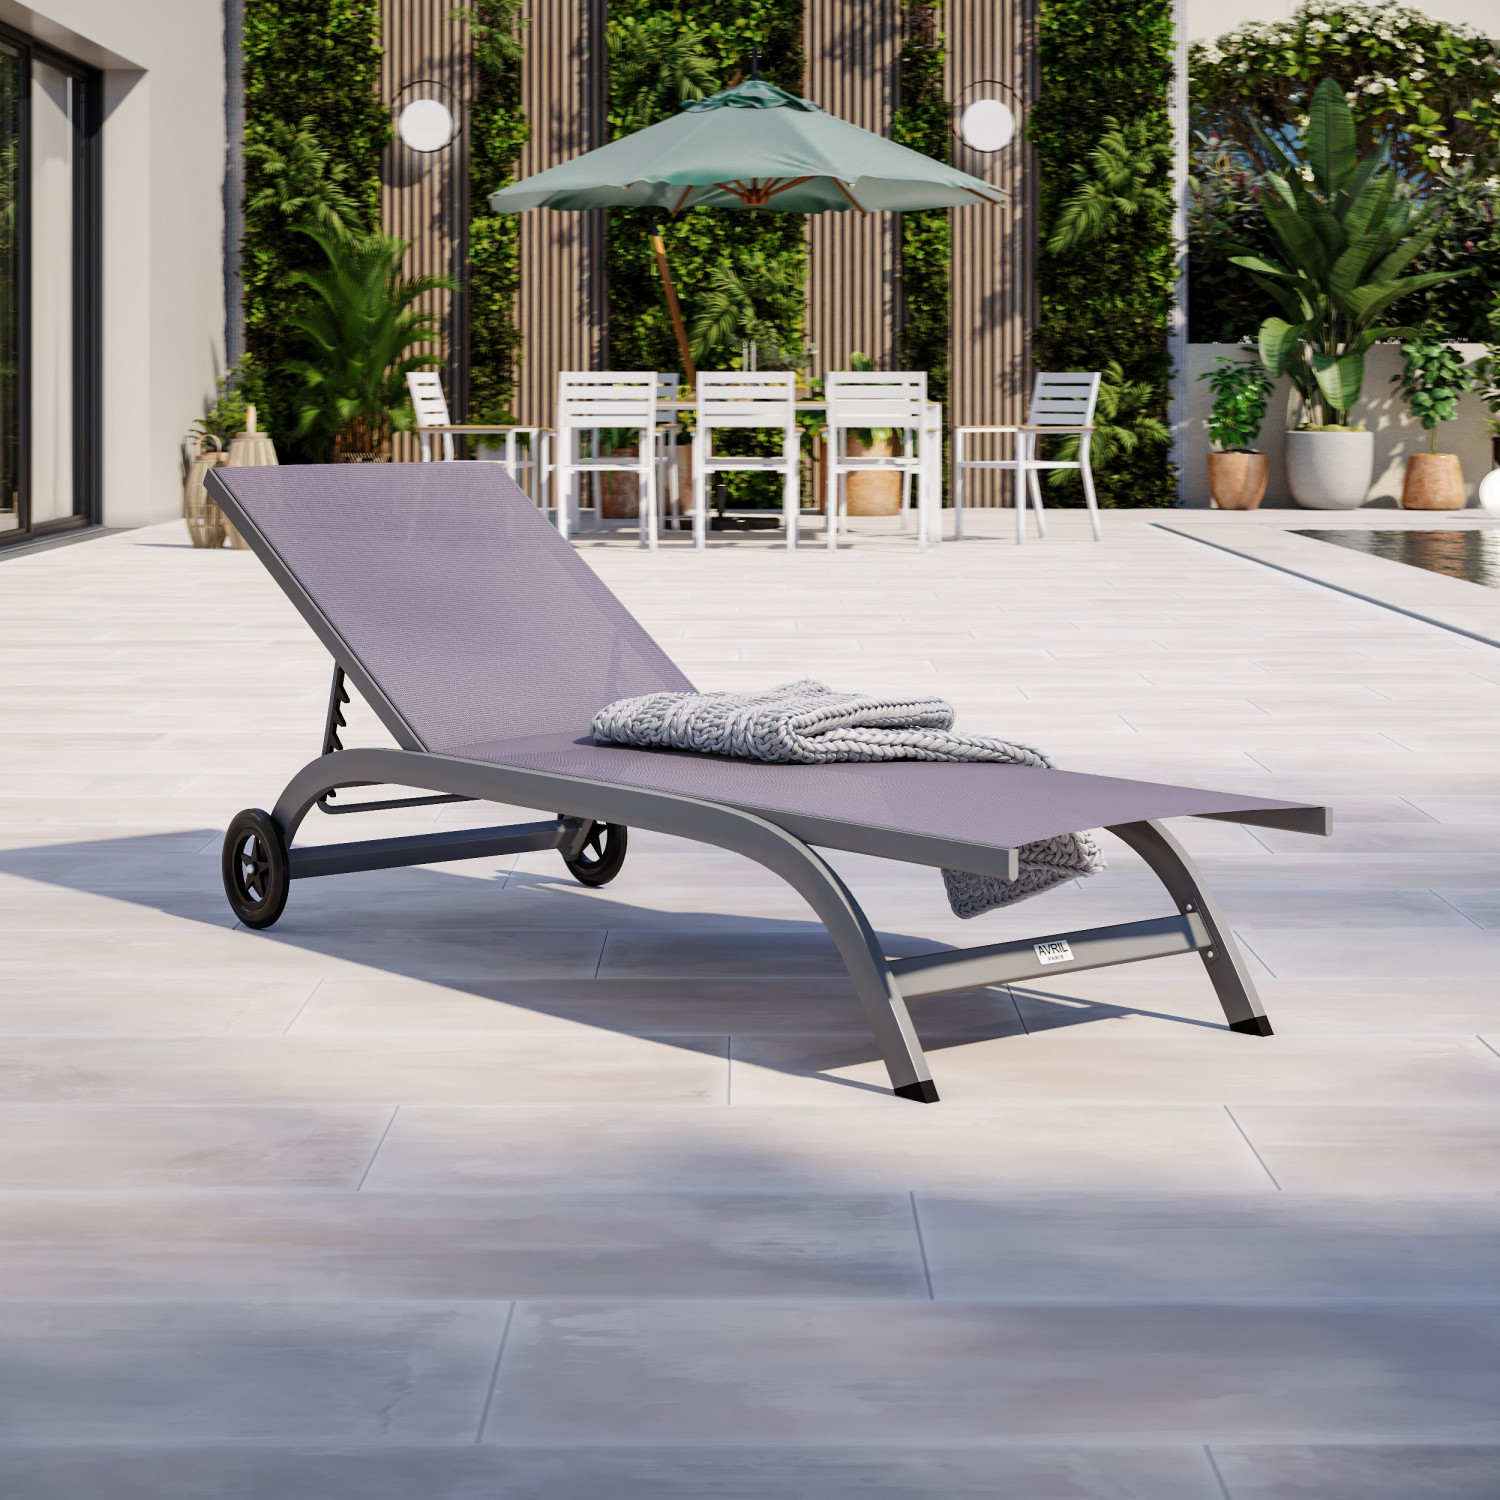 Bain de soleil / transat de jardin inclinable 5 positions aluminium avec roulettes - Gris Anthracite